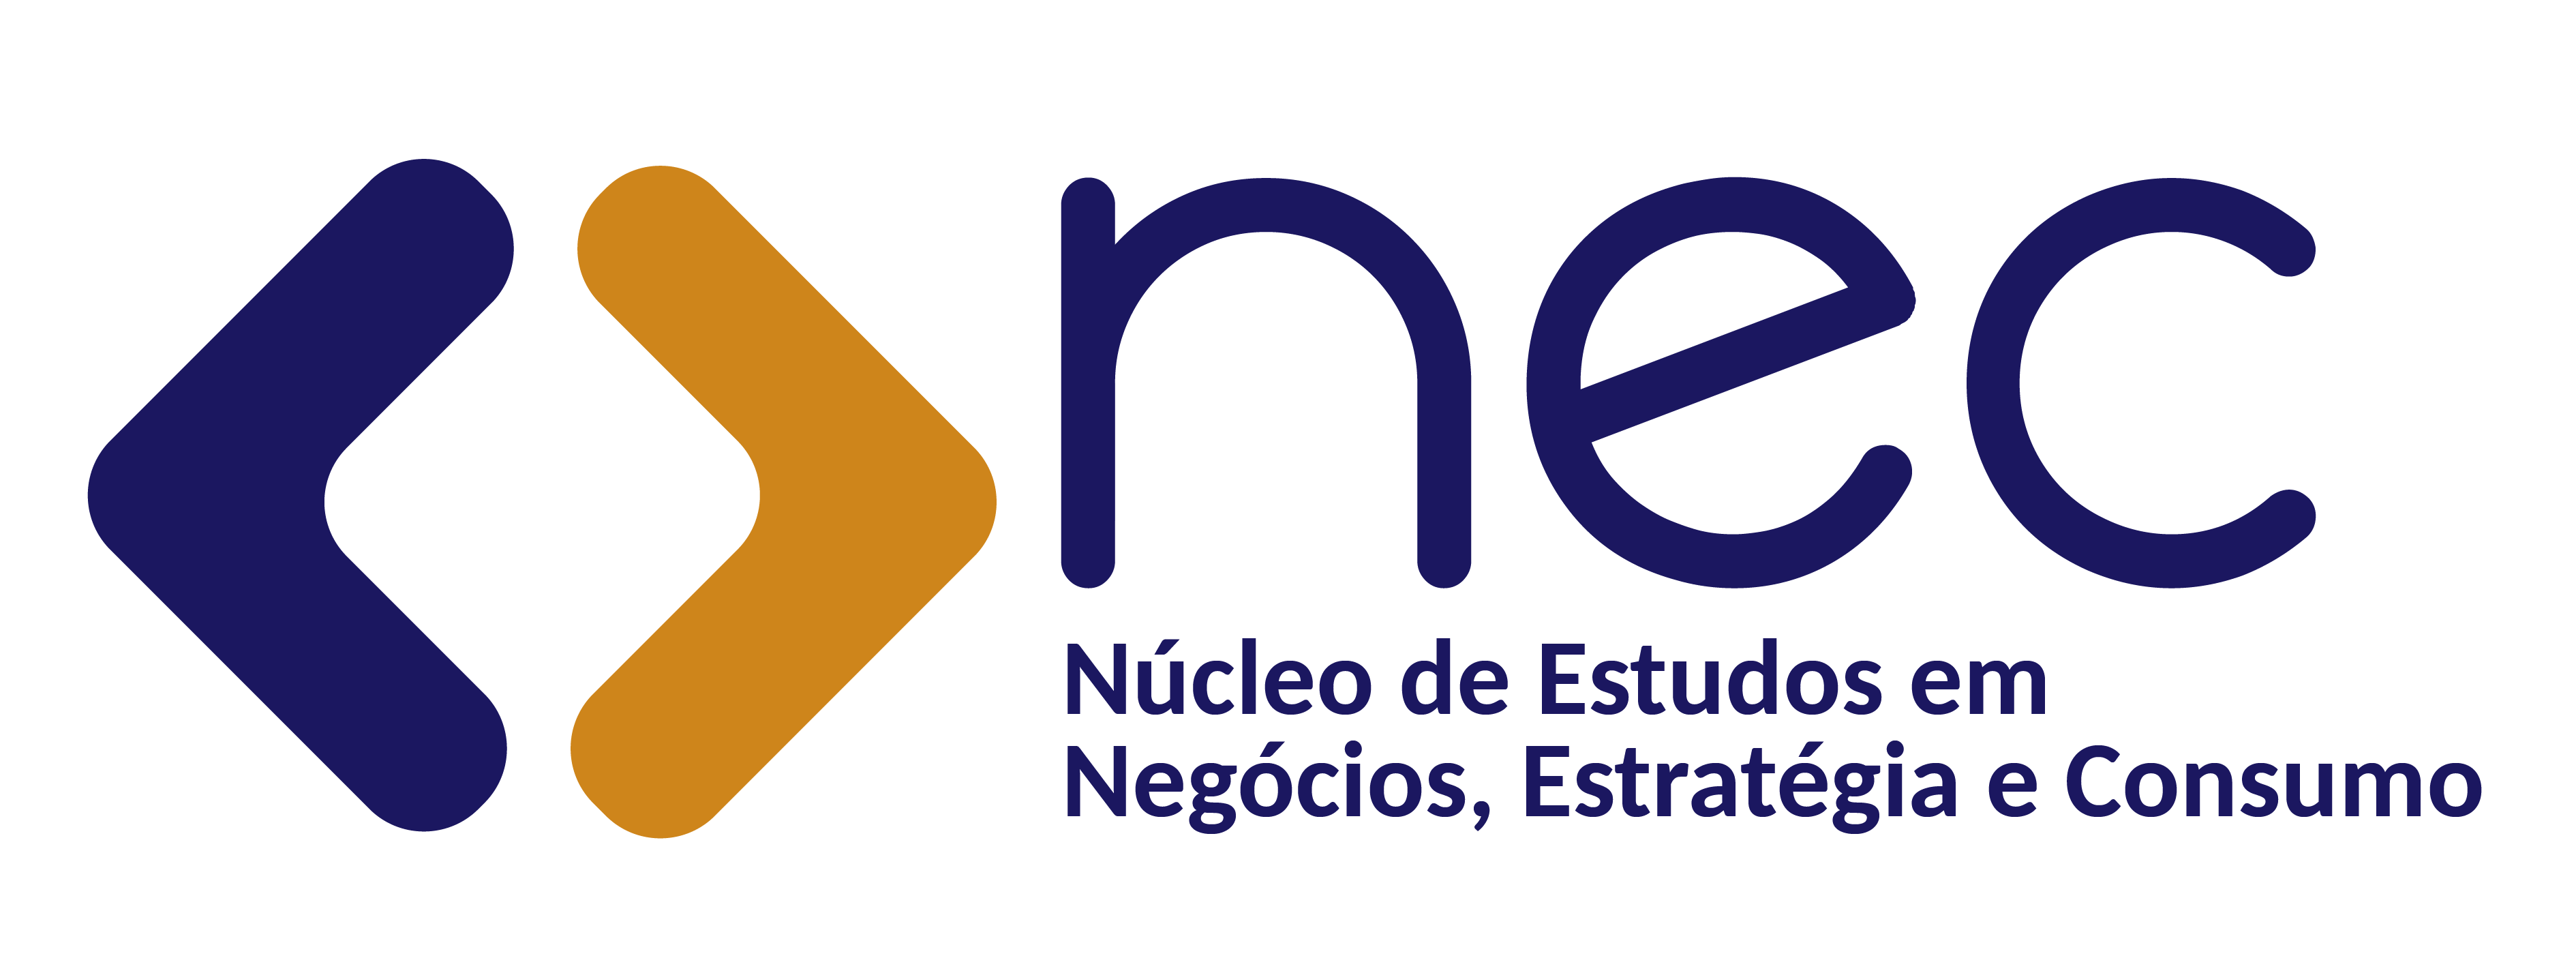 NEC | Núcleo de Estudos em Negócios, Estratégia e Consumo